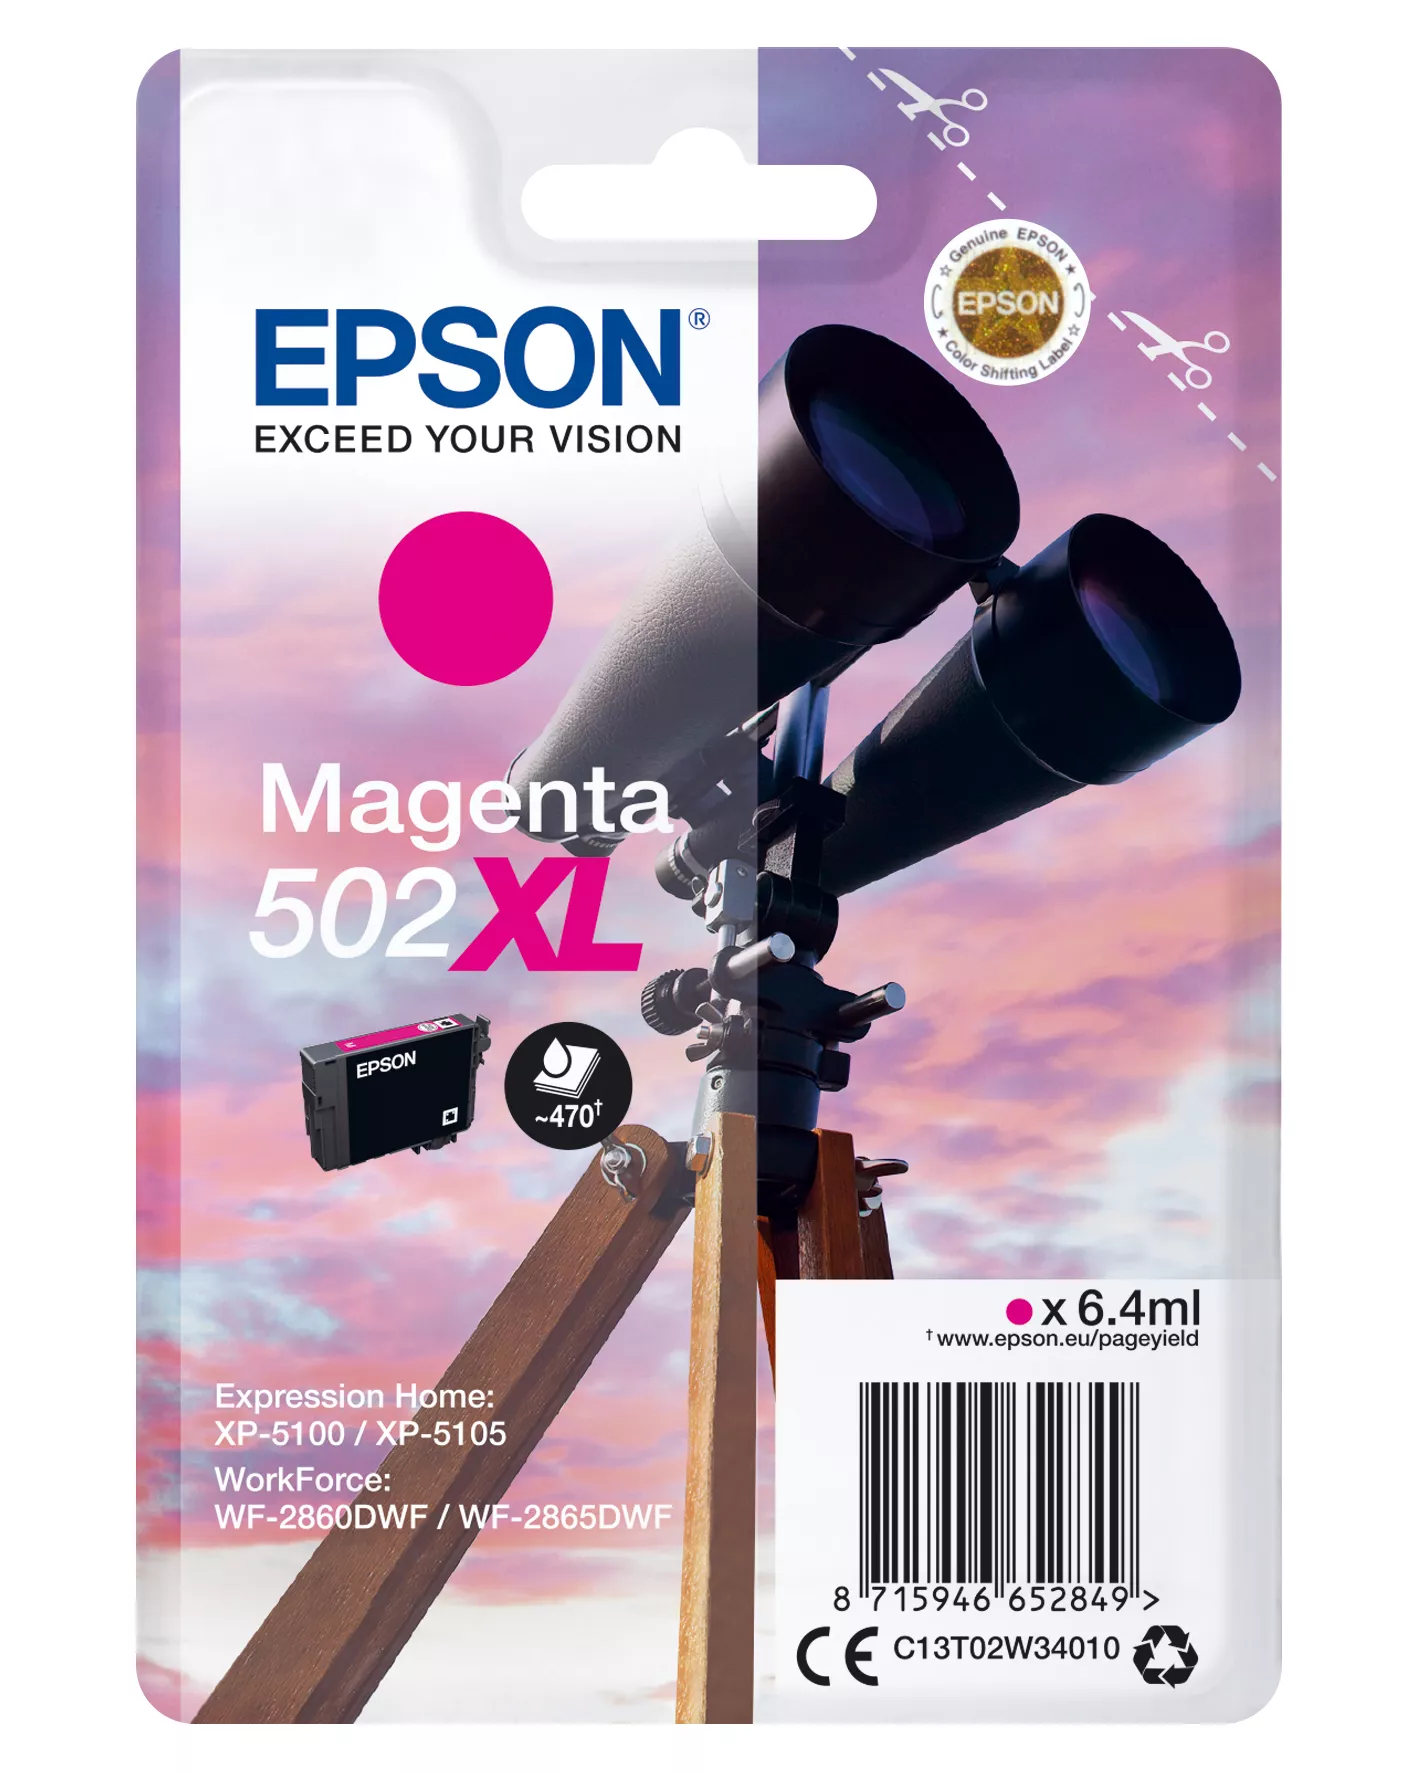 Vente Cartouches d'encre EPSON Singlepack Magenta 502XL Ink SEC sur hello RSE